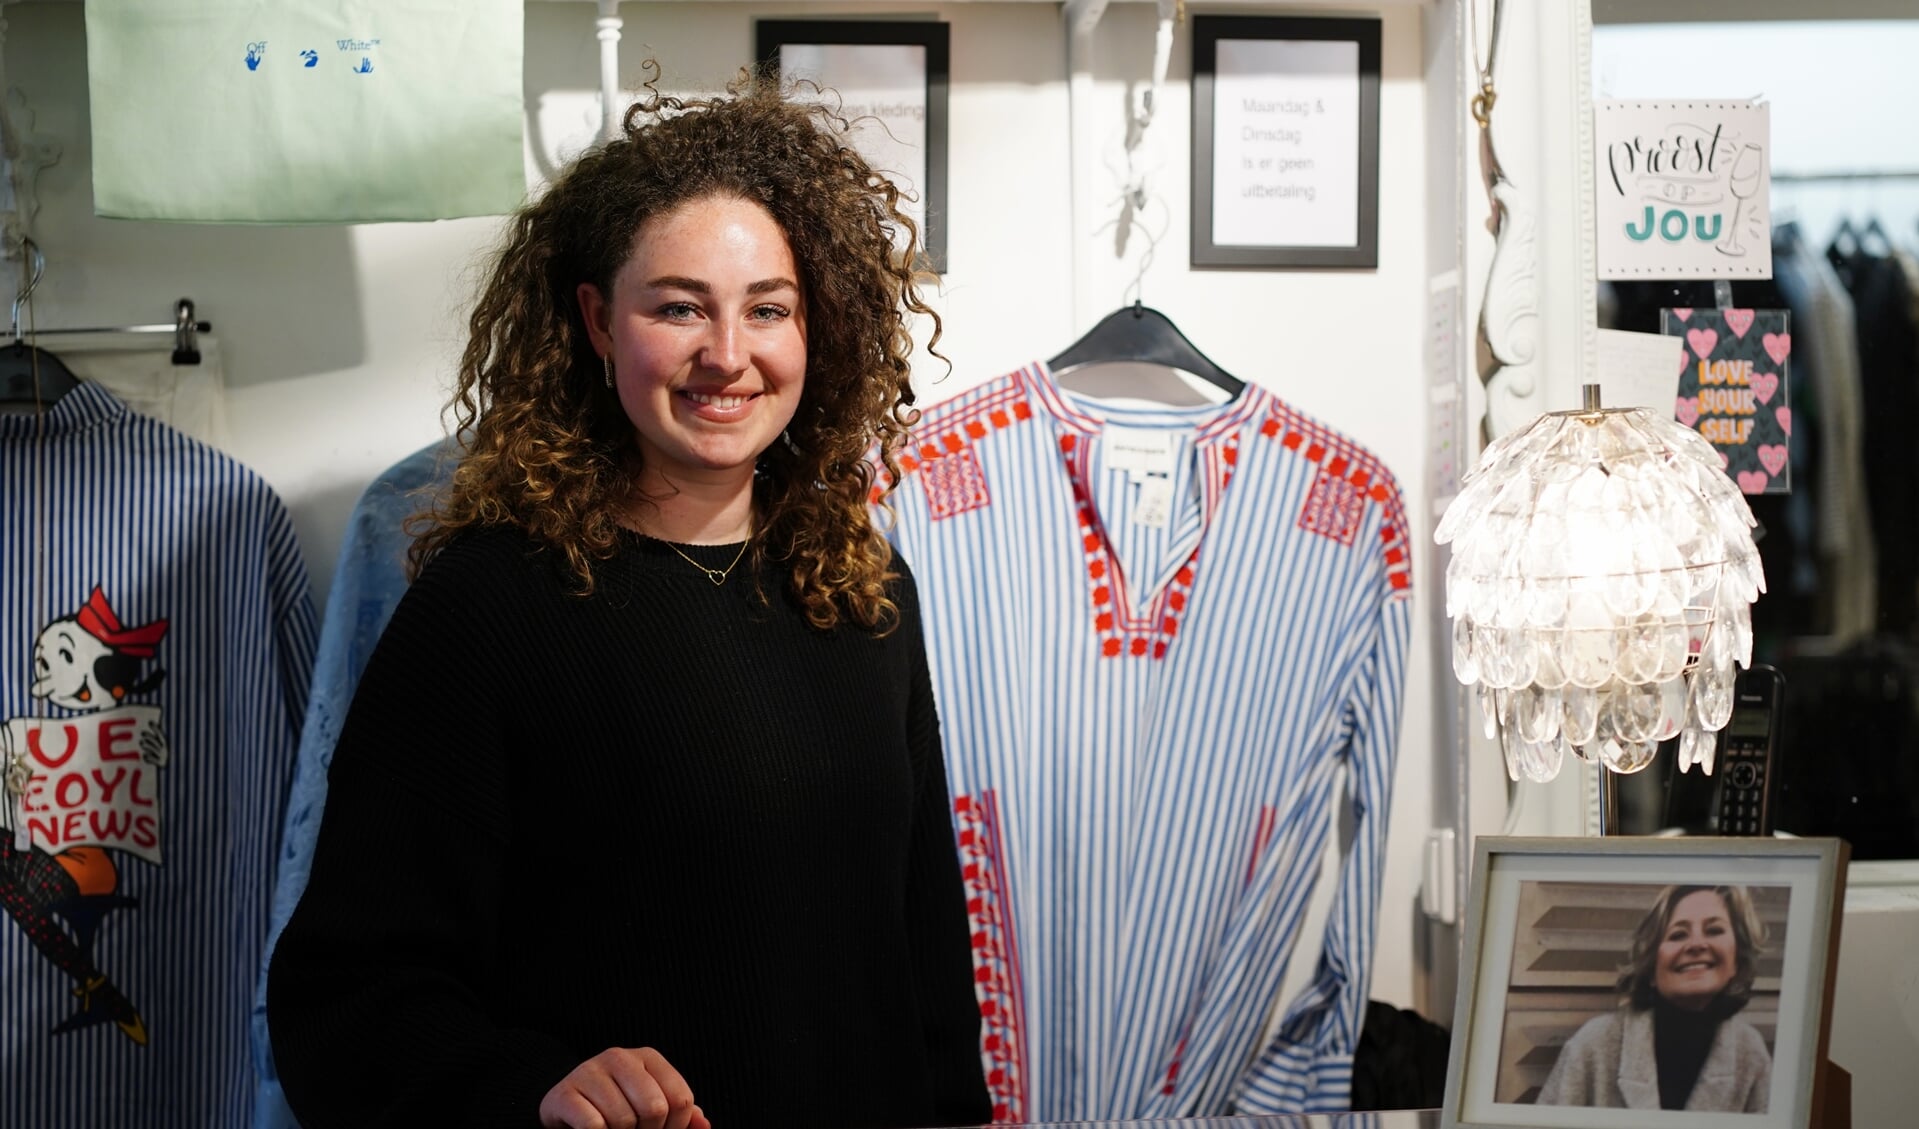 Britt Hogenes nam na het overlijden van haar moeder (zie foto op de toonbank) haar kledingwinkel Re-Style over. 